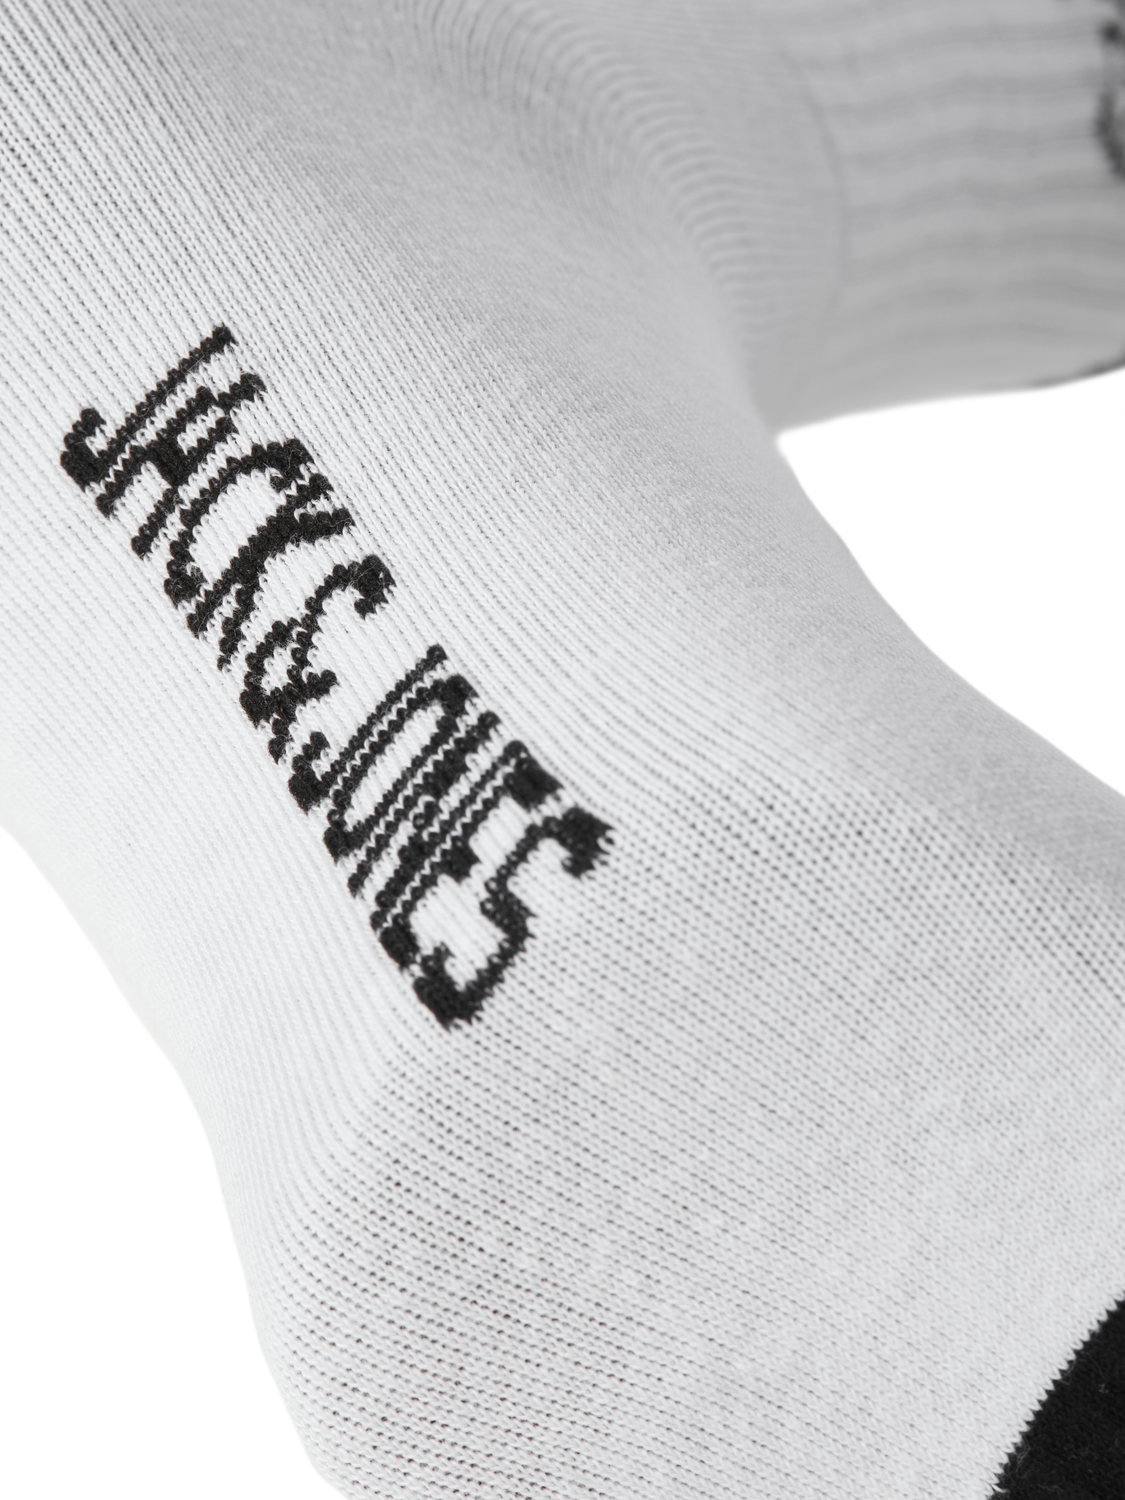 Jack & Jones 5-pack Socks -White - 12251435